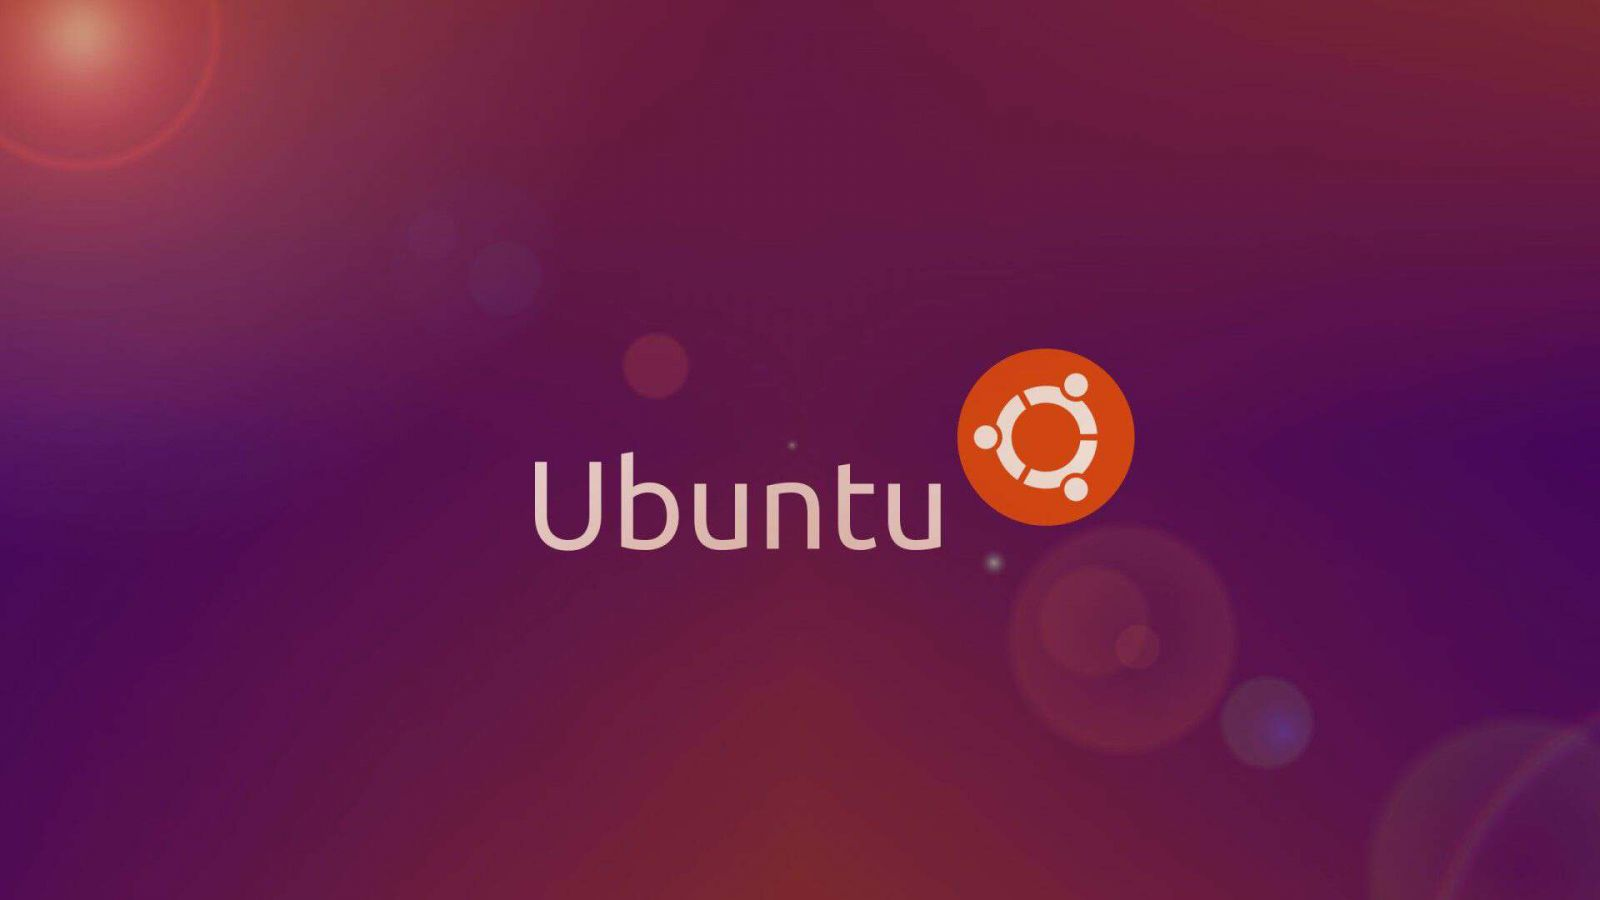 cai-dat-ubuntu-tu-o-cung-khong-can-usb